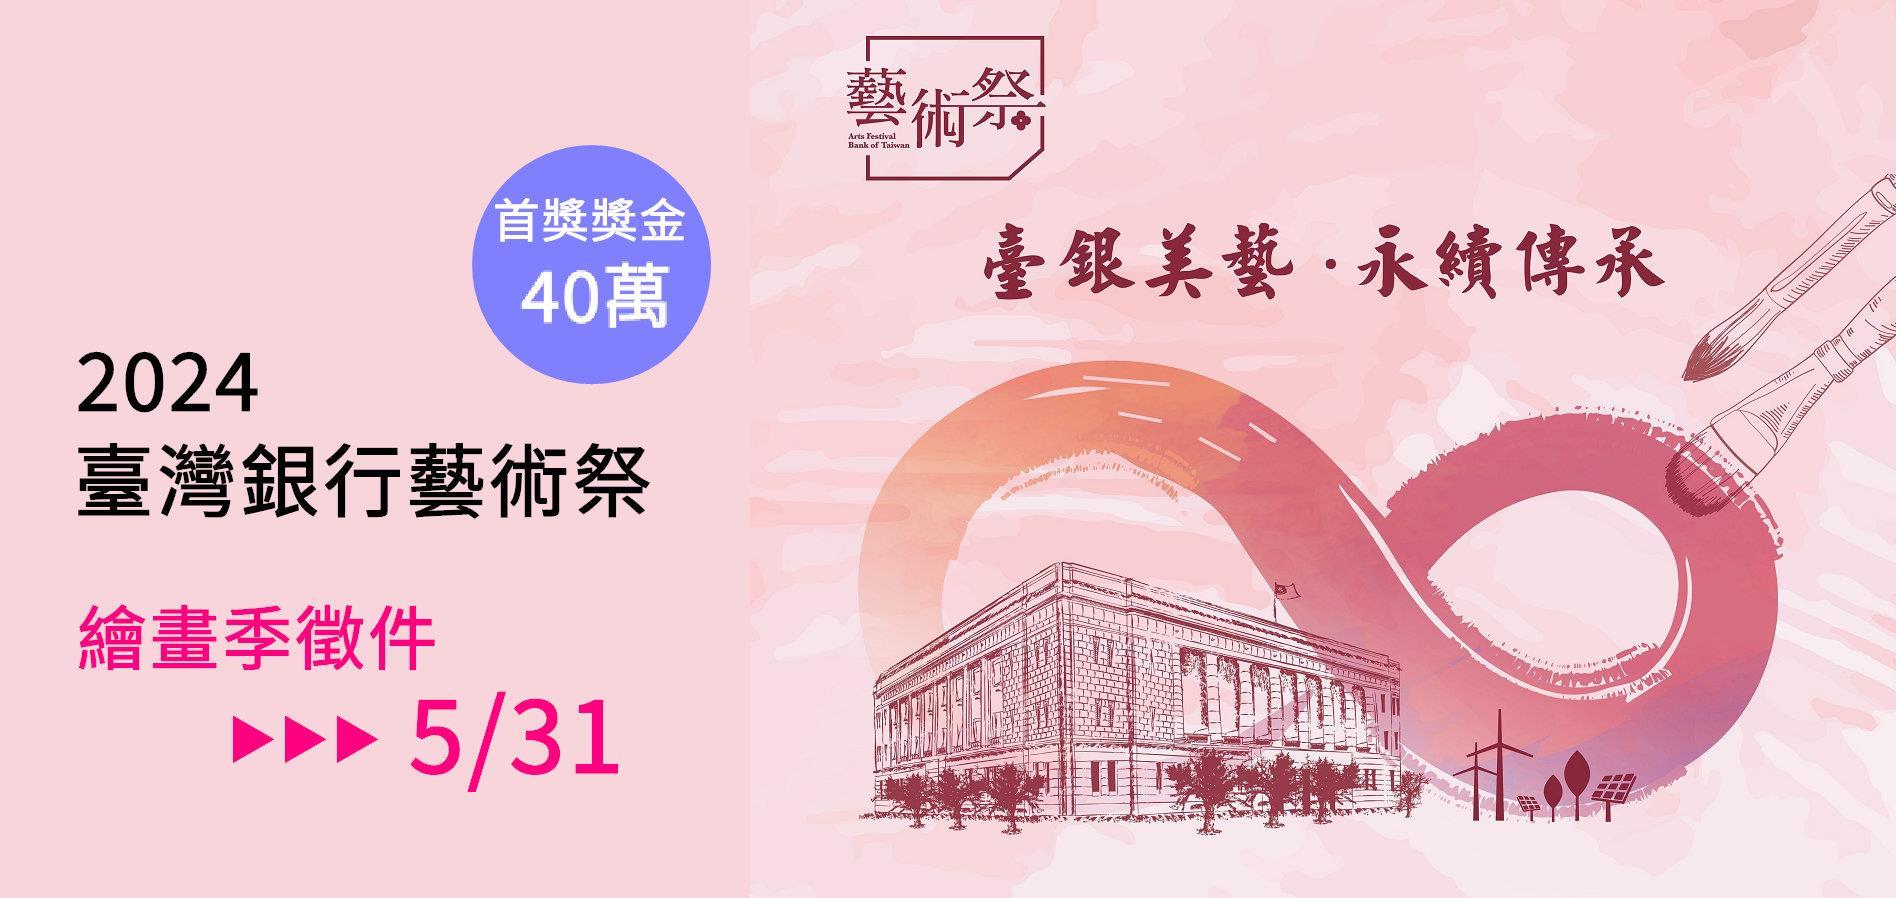 【協同宣傳】2024臺灣銀行藝術祭-繪畫季徵件